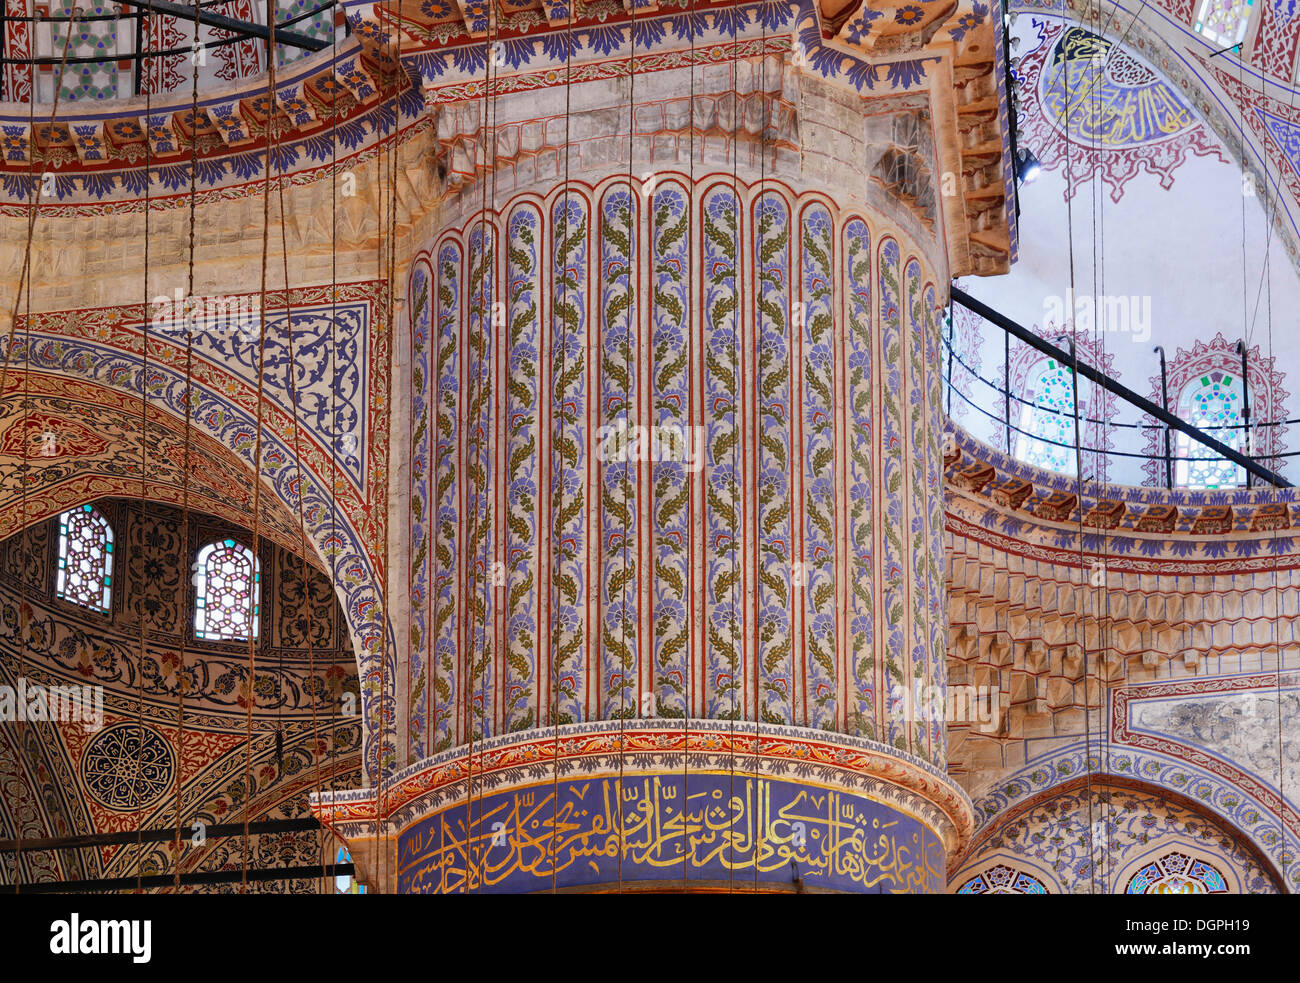 Innenansicht, Spalte dekoriert mit Iznik Keramik, Fliesen, blaue Moschee, Sultan Ahmed Mosque oder Sultanahmet Camii, Istanbul Stockfoto